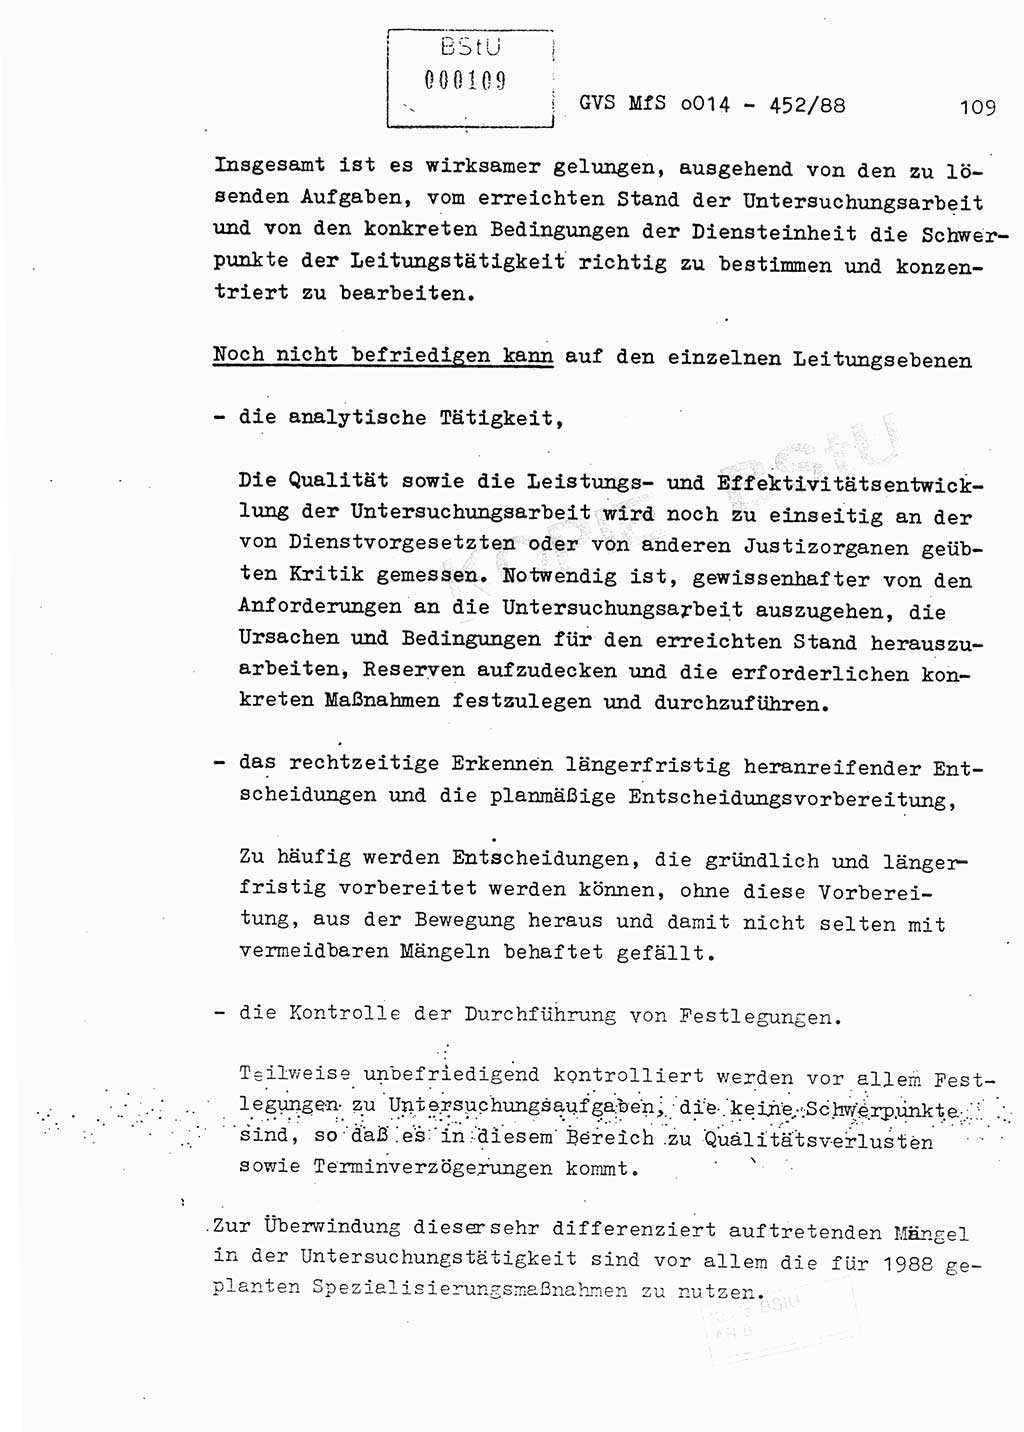 Jahresbericht der Hauptabteilung (HA) Ⅸ 1987, Einschätzung der Wirksamkeit der Untersuchungsarbeit im Jahre 1987, Ministerium für Staatssicherheit (MfS) der Deutschen Demokratischen Republik (DDR), Hauptabteilung Ⅸ, Geheime Verschlußsache (GVS) o014-452/88, Berlin 1988, Seite 109 (Einsch. MfS DDR HA Ⅸ GVS o014-452/88 1987, S. 109)